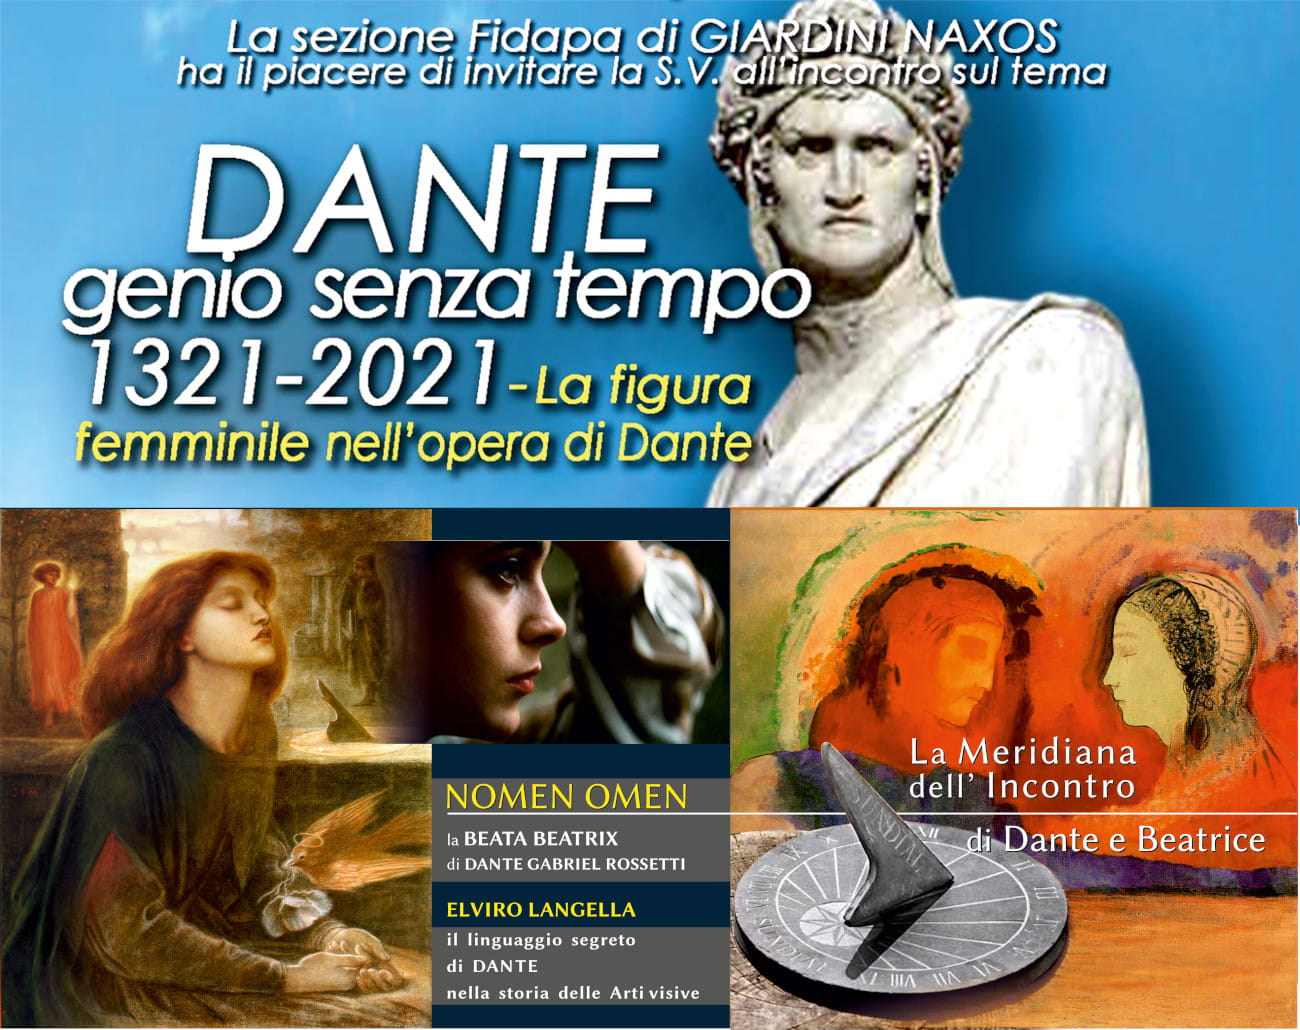 Dante, Fidapa 2021